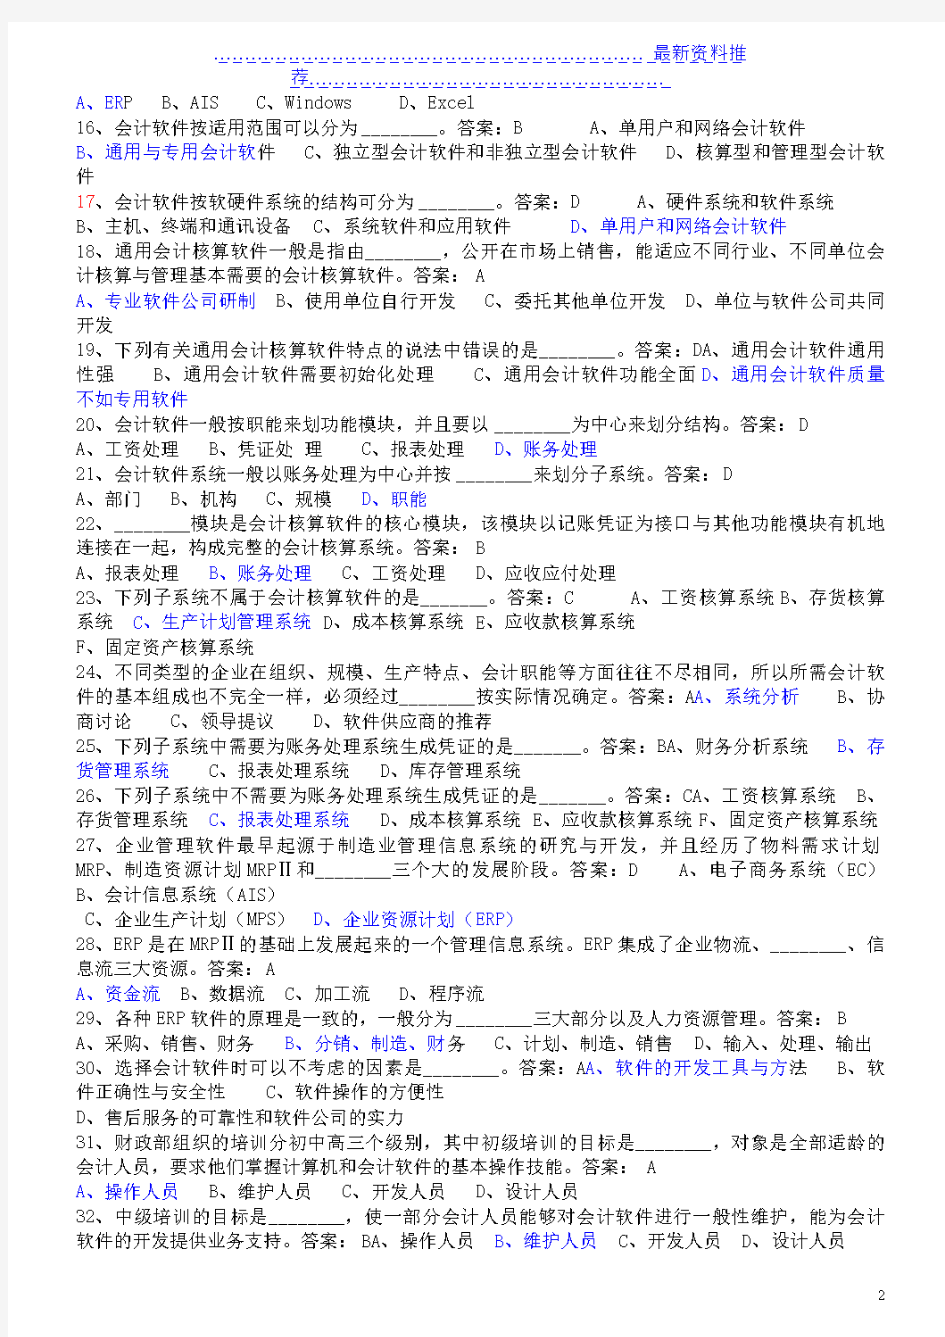 (最新)广东省(广州市)会计初级电算化考试真题题库(考试题目就